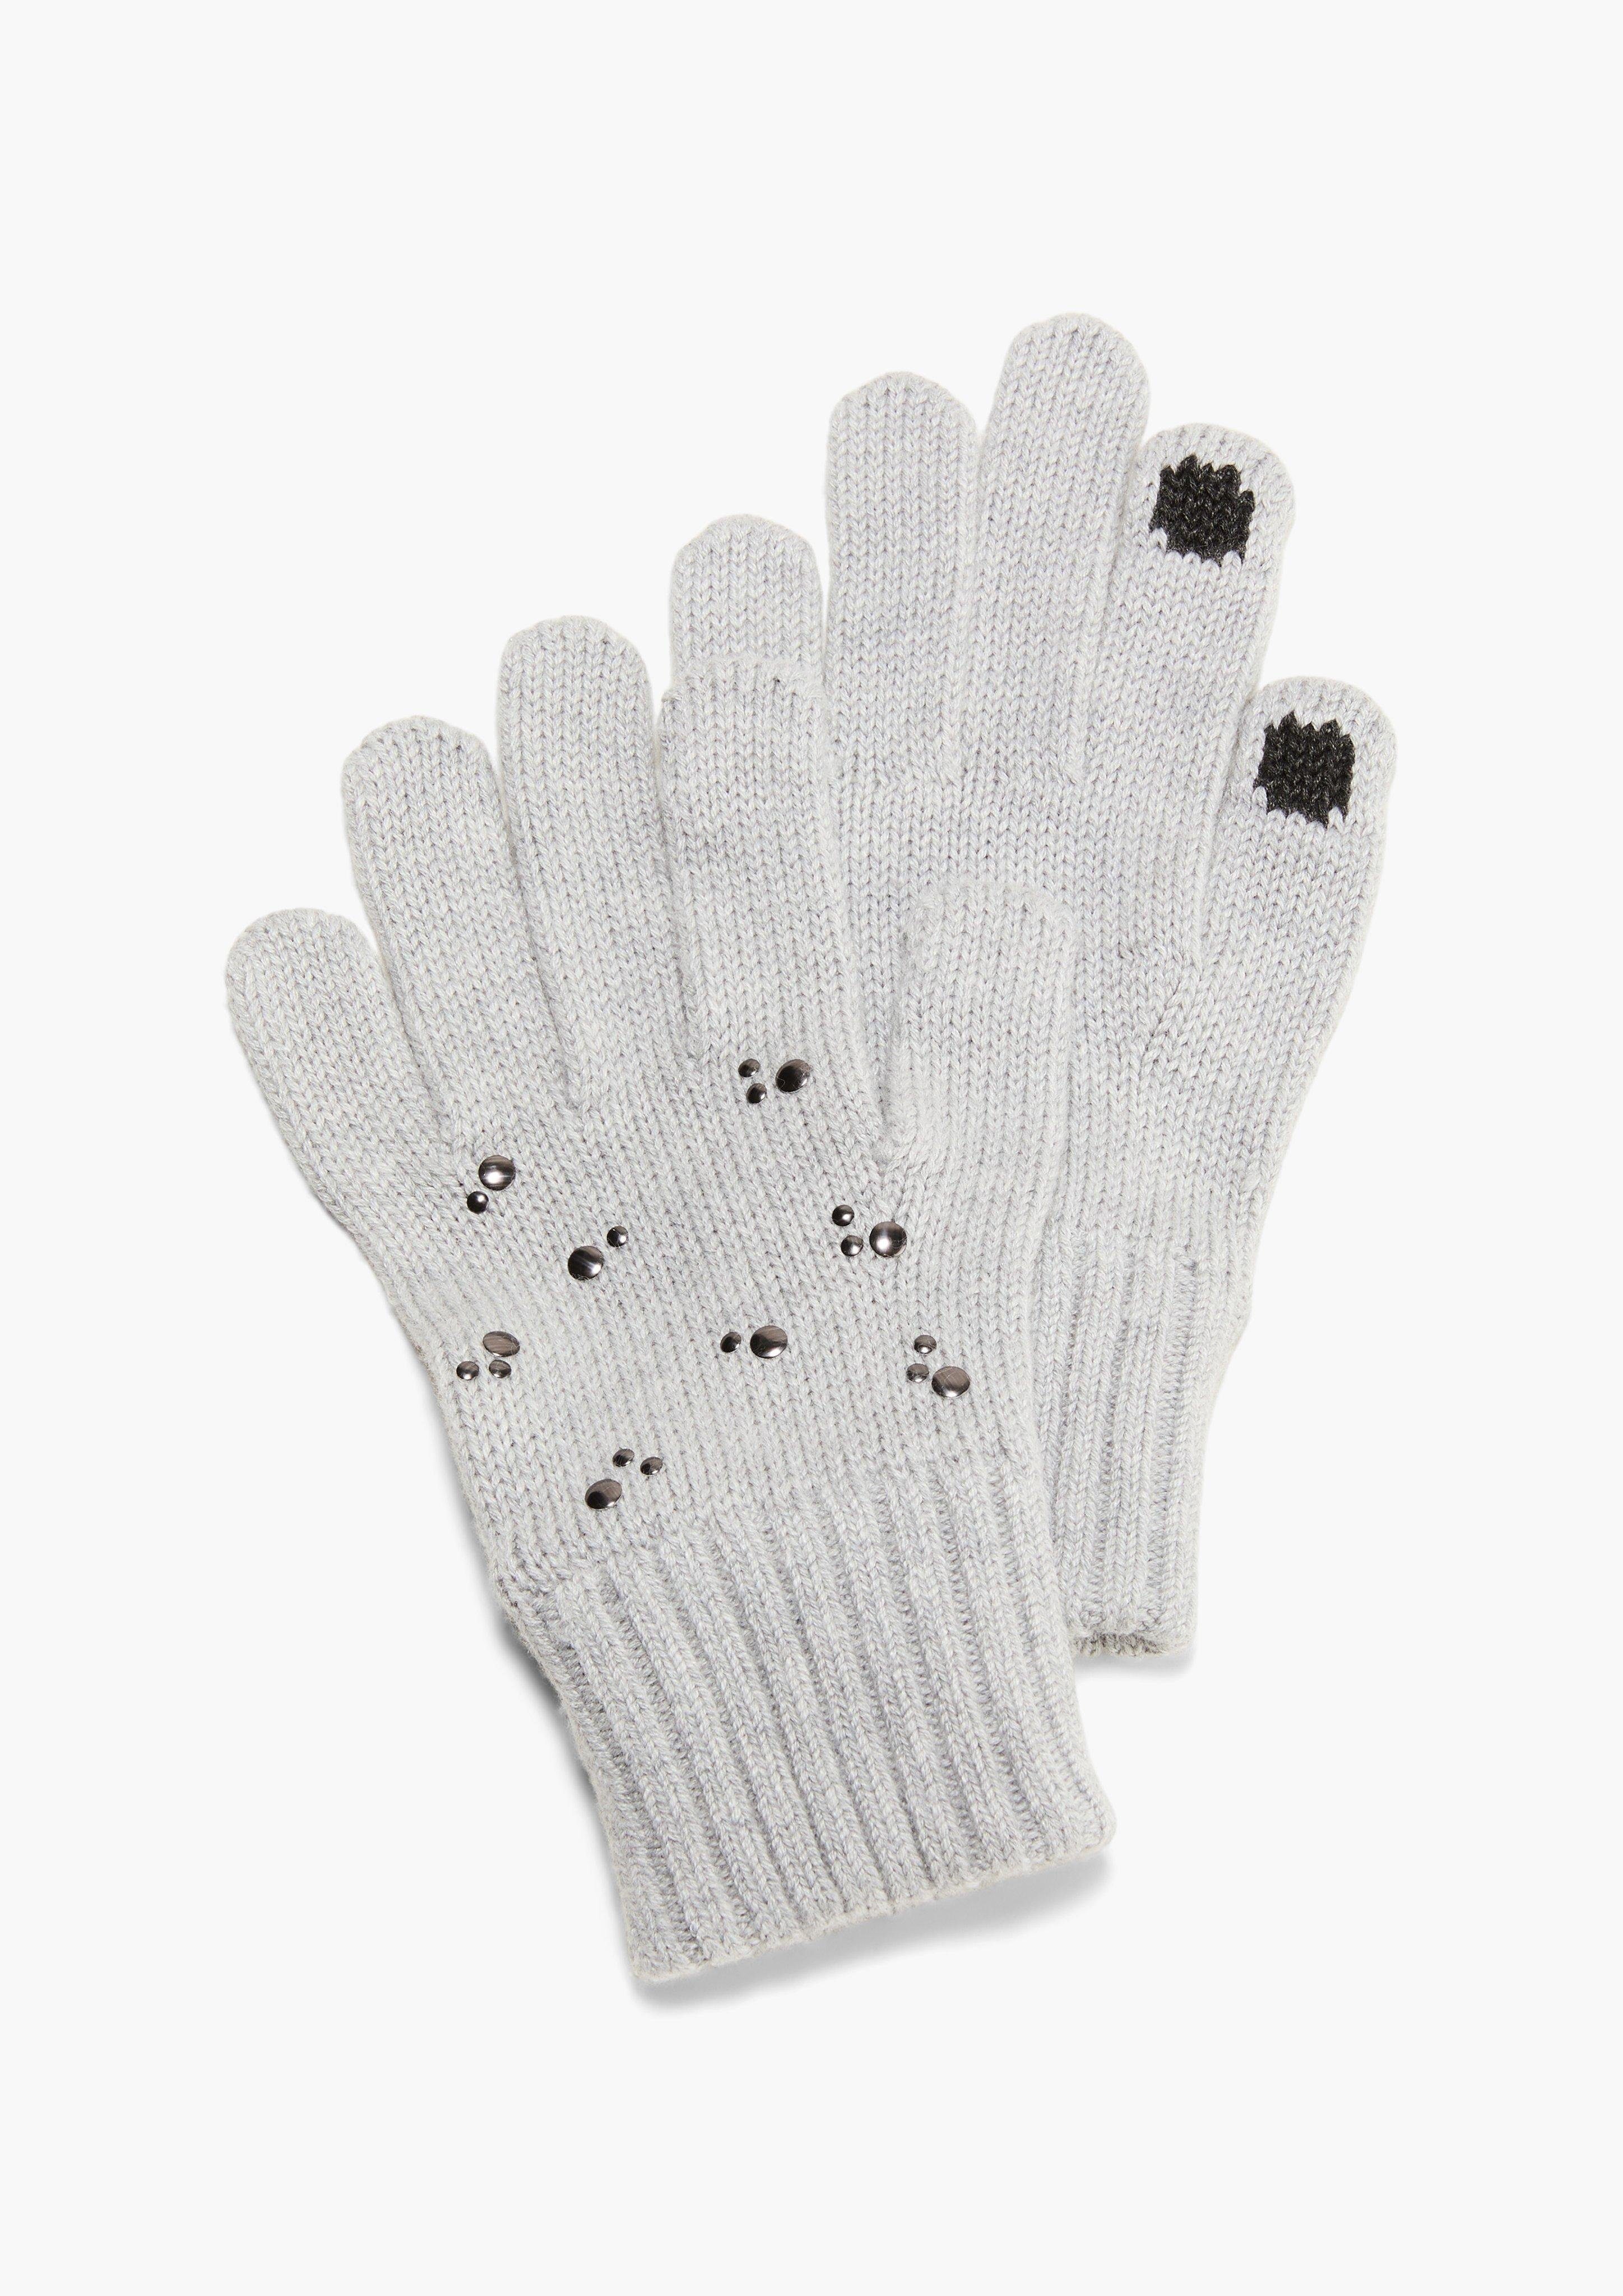 Rippbündchen meliert Handschuhe grau Strickhandschuhe Modalmix s.Oliver aus